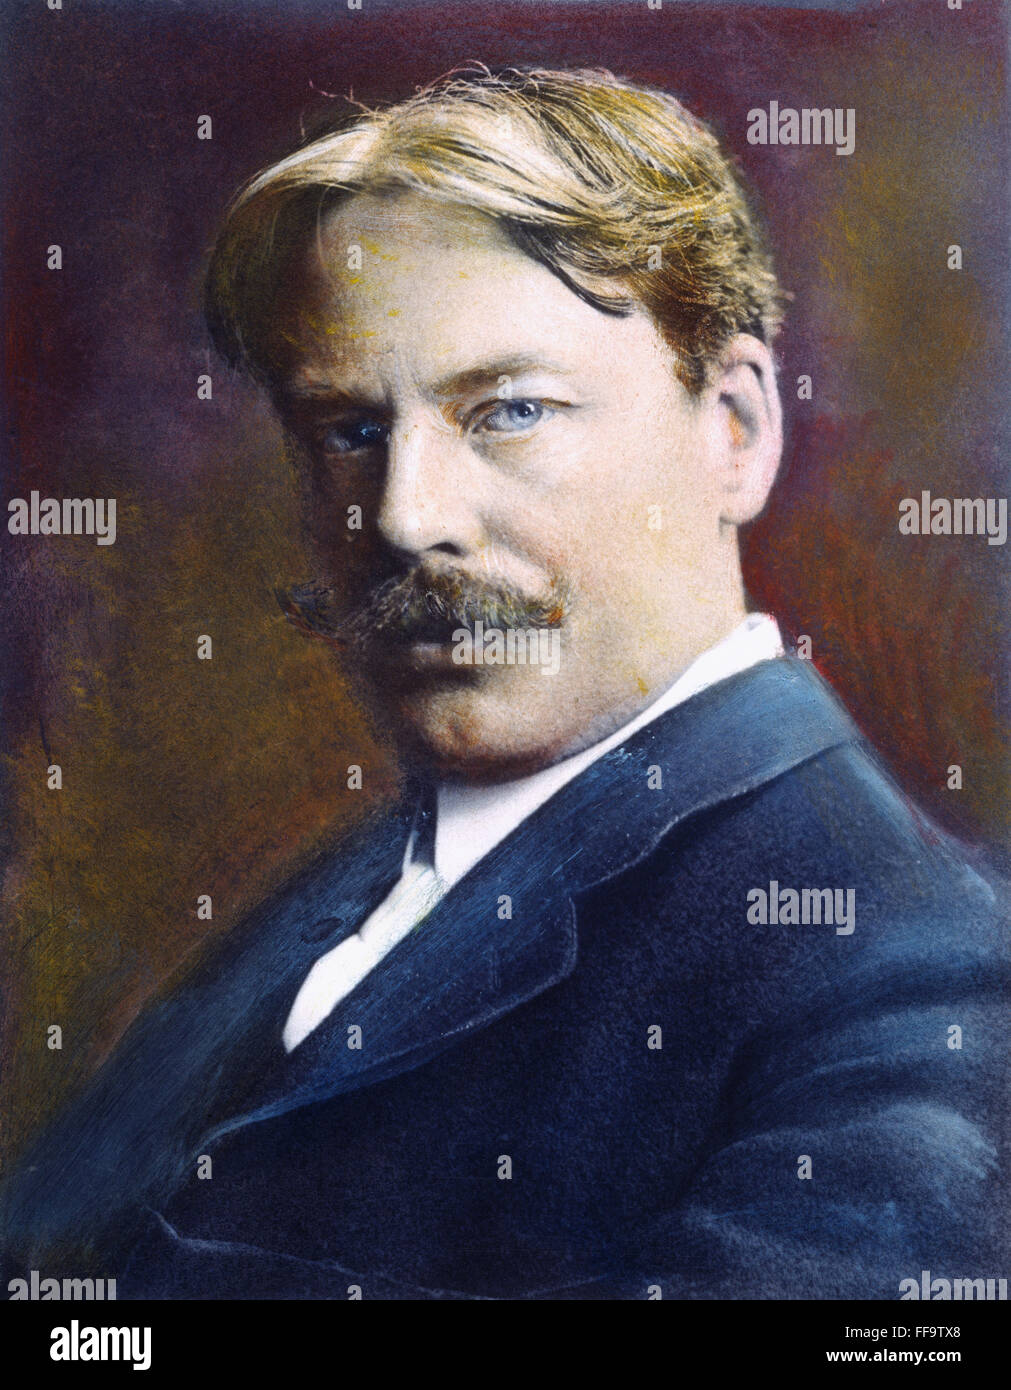 EDWARD ALEXANDER MacDOWELL /n(1861-1908). US-amerikanischer Komponist. Öl über ein Foto. Stockfoto